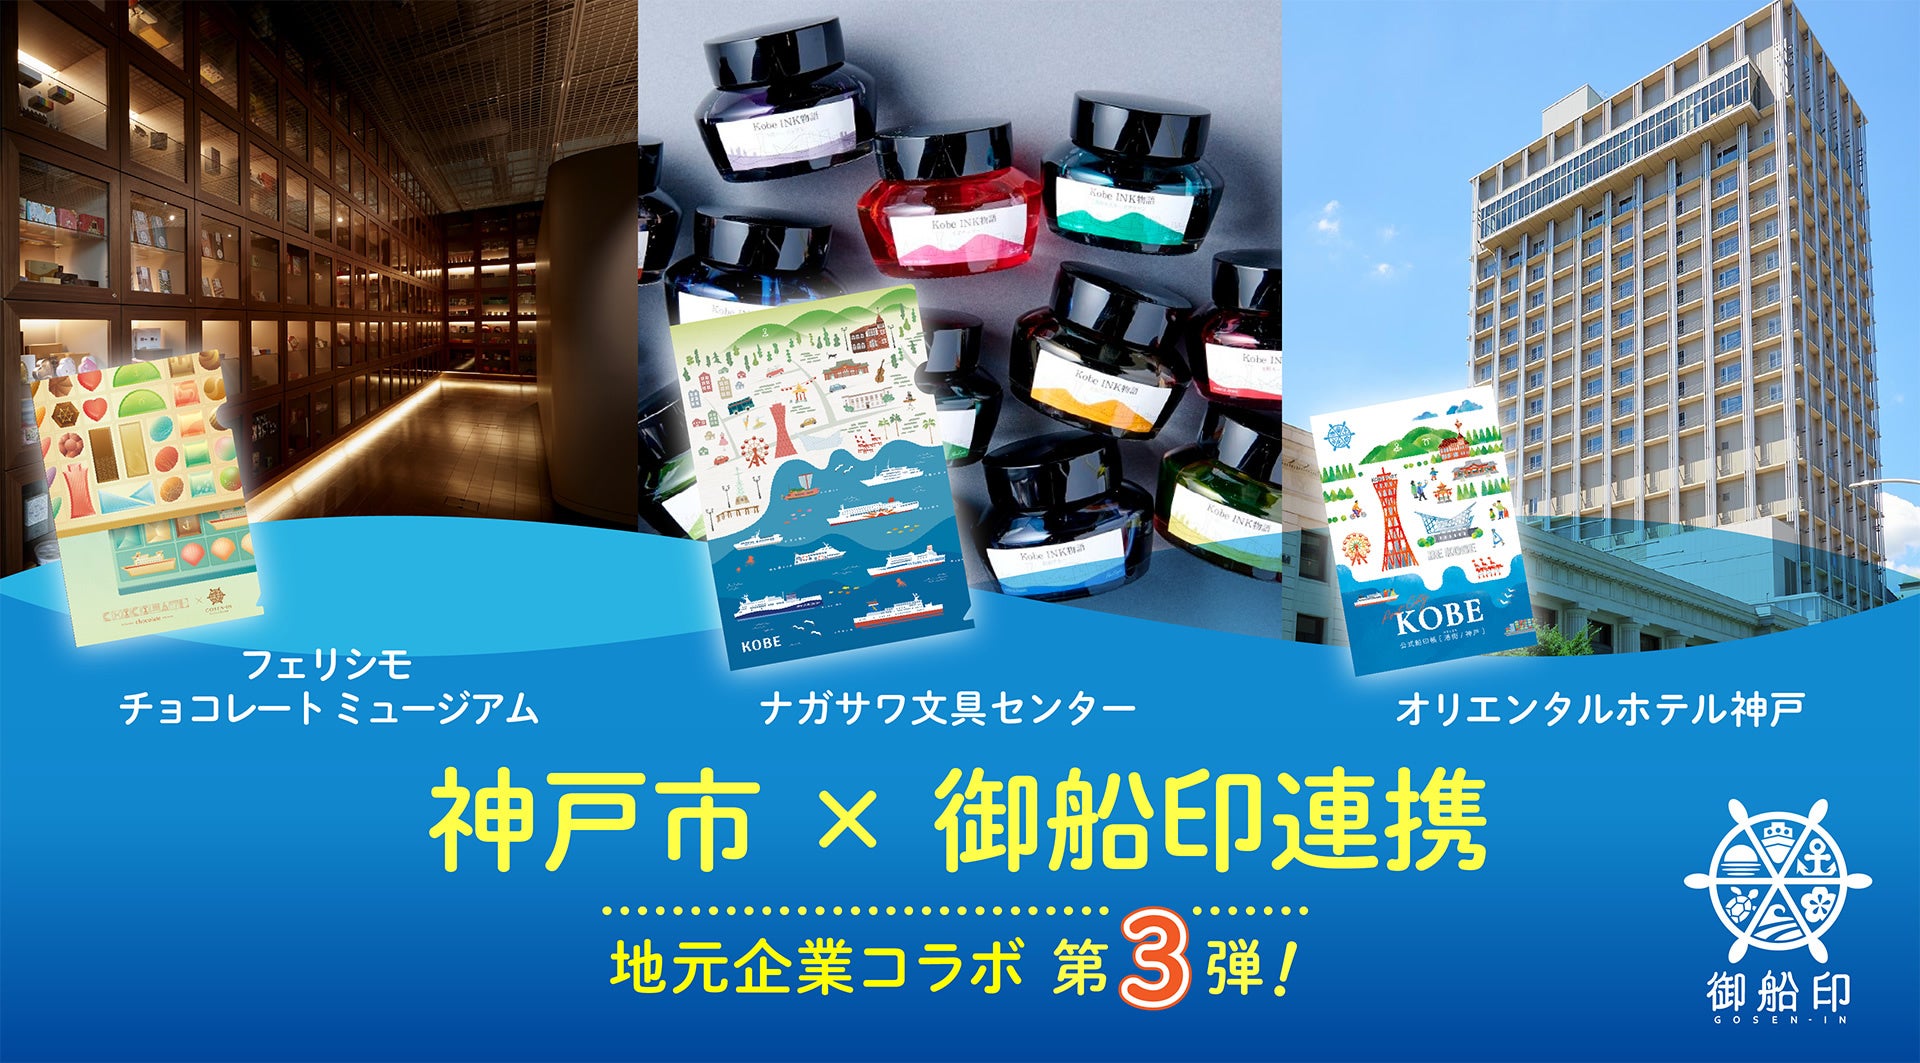 神戸市と御船印めぐりプロジェクトが神戸の企業３社とコラボ　「港」をテーマにオリジナル商品などを展開